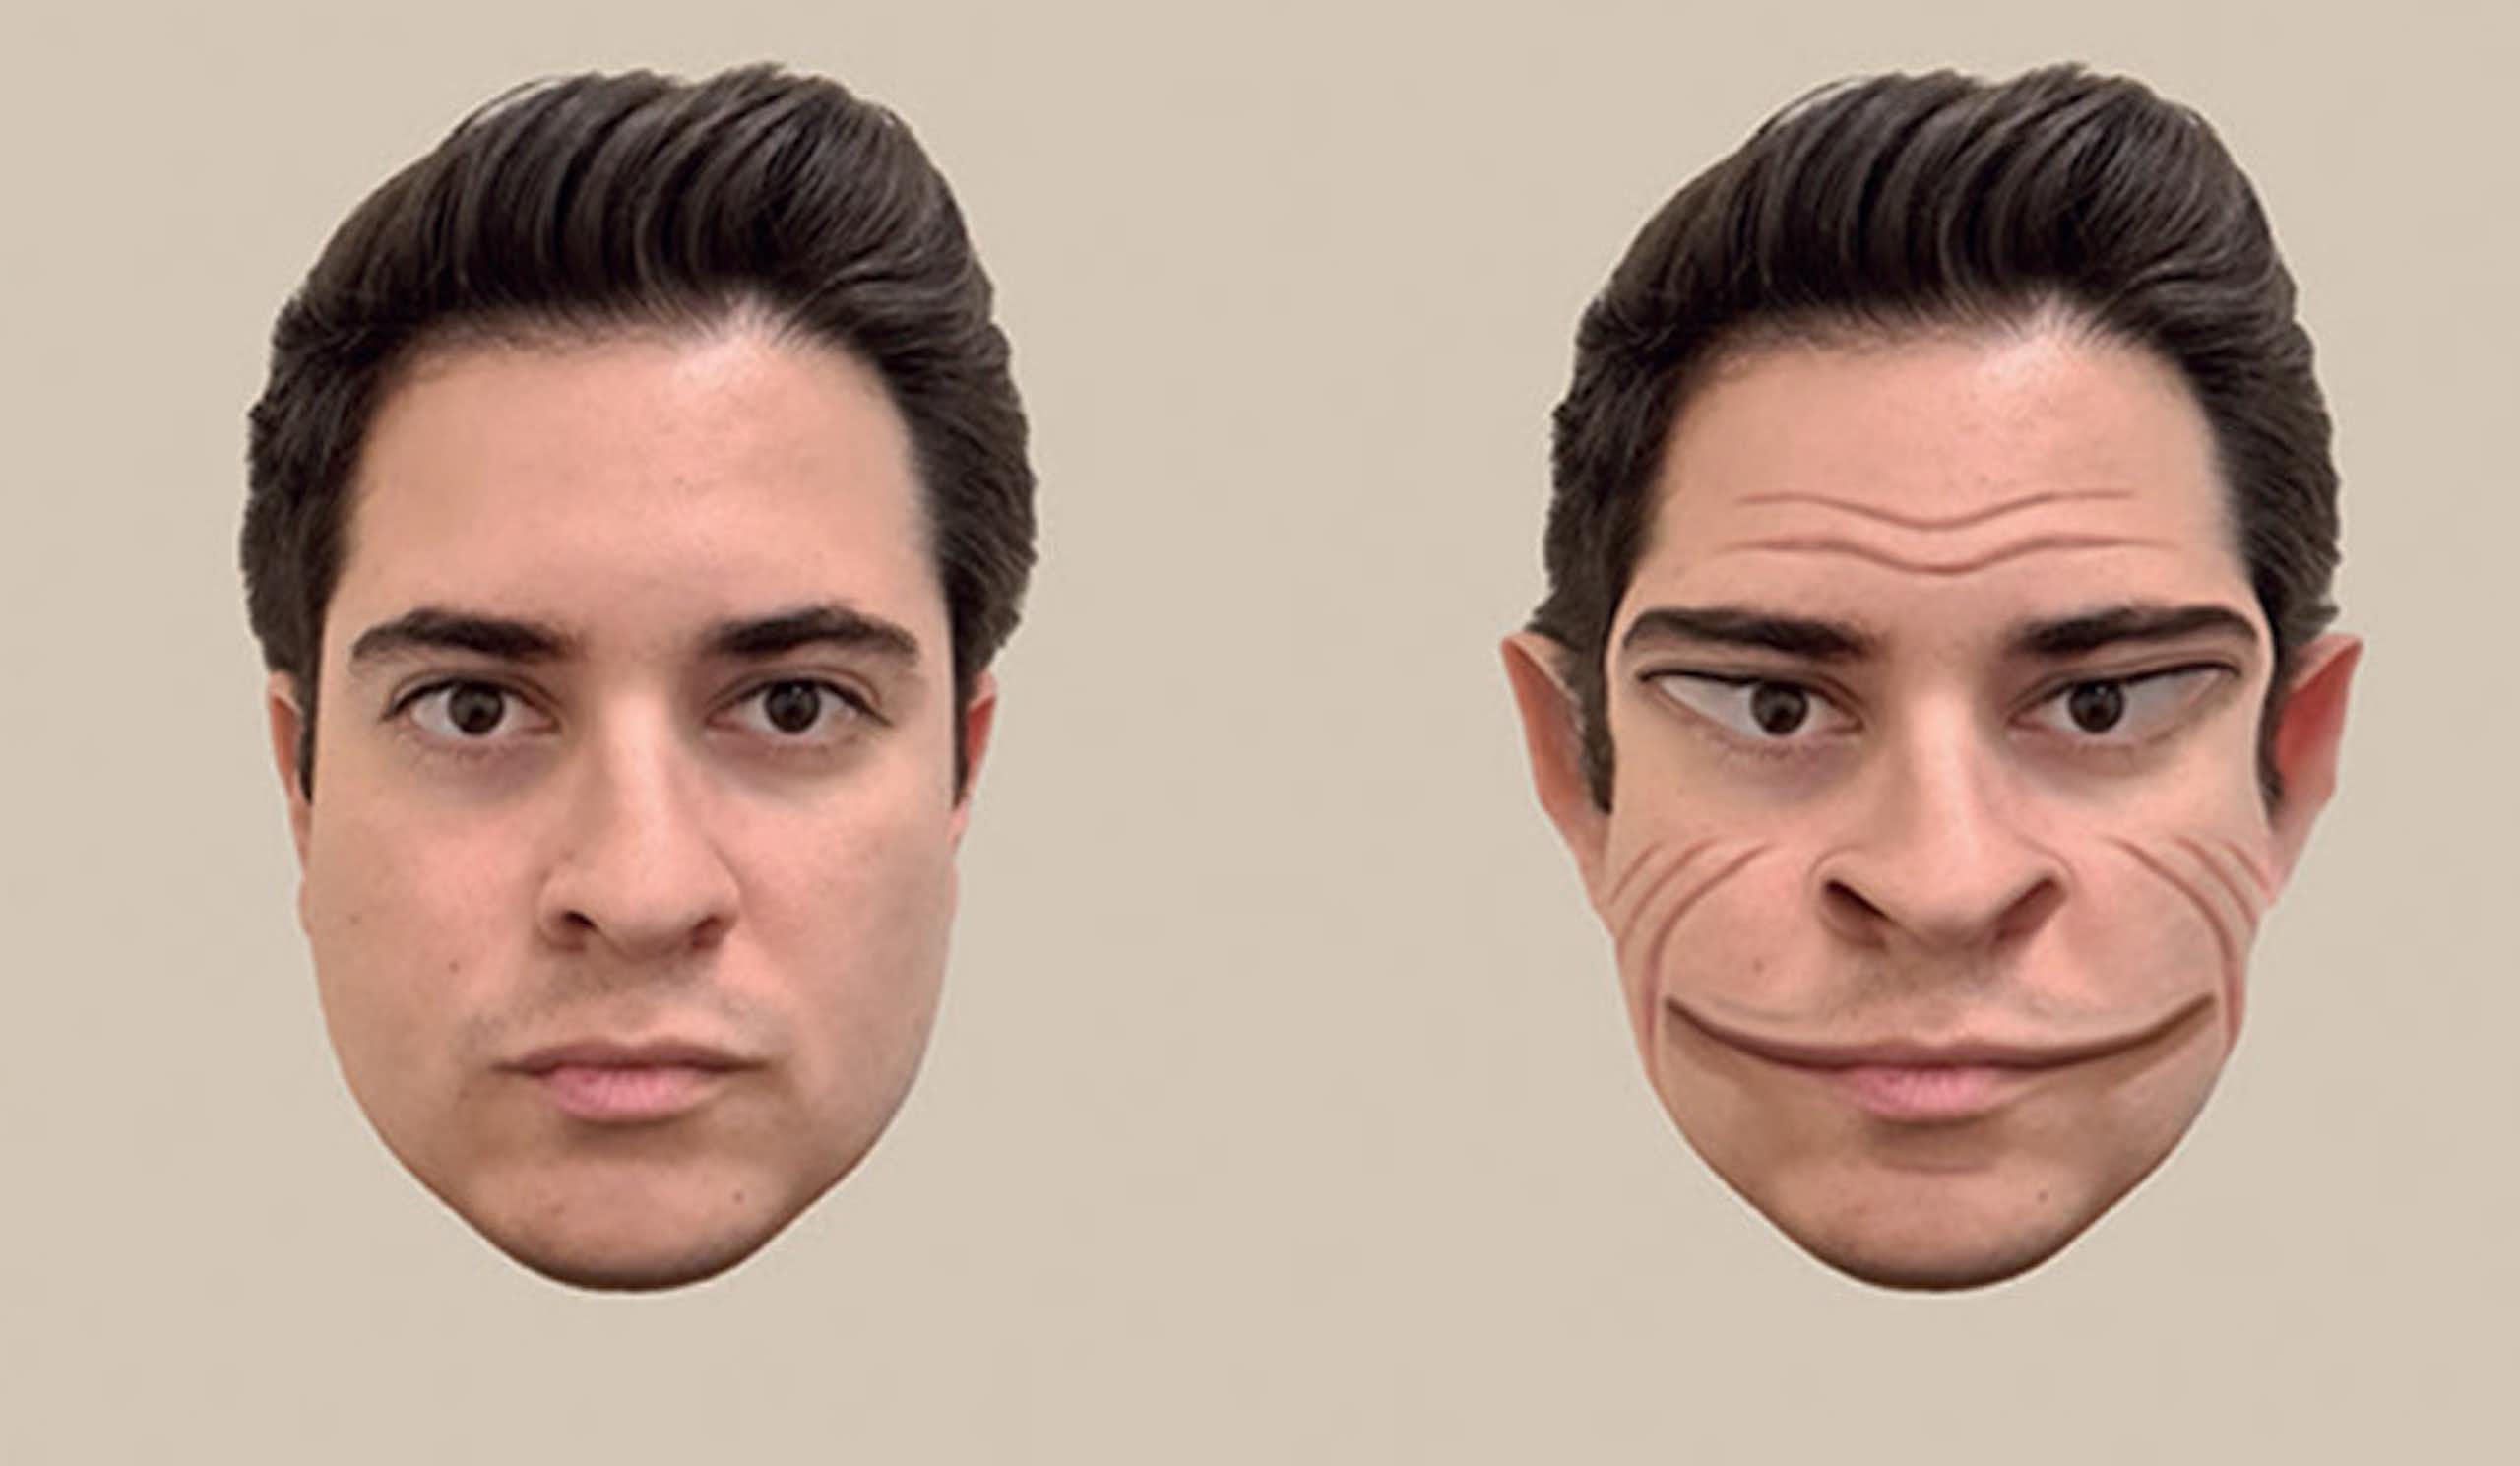 Deux visages présentés côte à côte, celui de droite étant une version déformée de celui de gauche